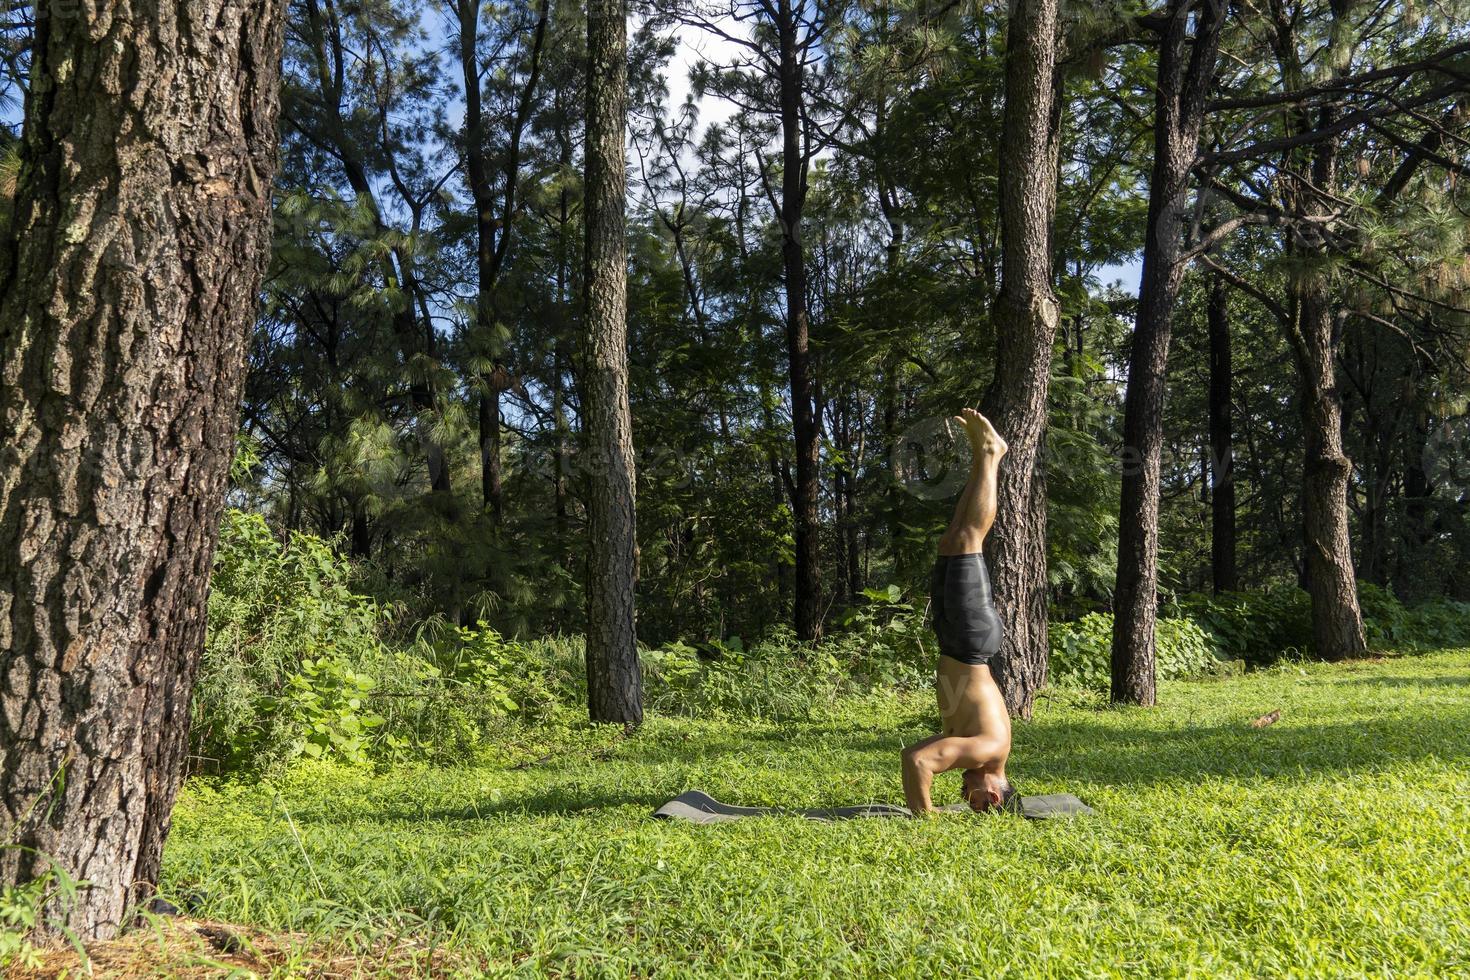 ung man, håller på med yoga eller reiki, i de skog mycket grön vegetation, i Mexiko, guadalajara, bosque colomos, latinamerikan, foto